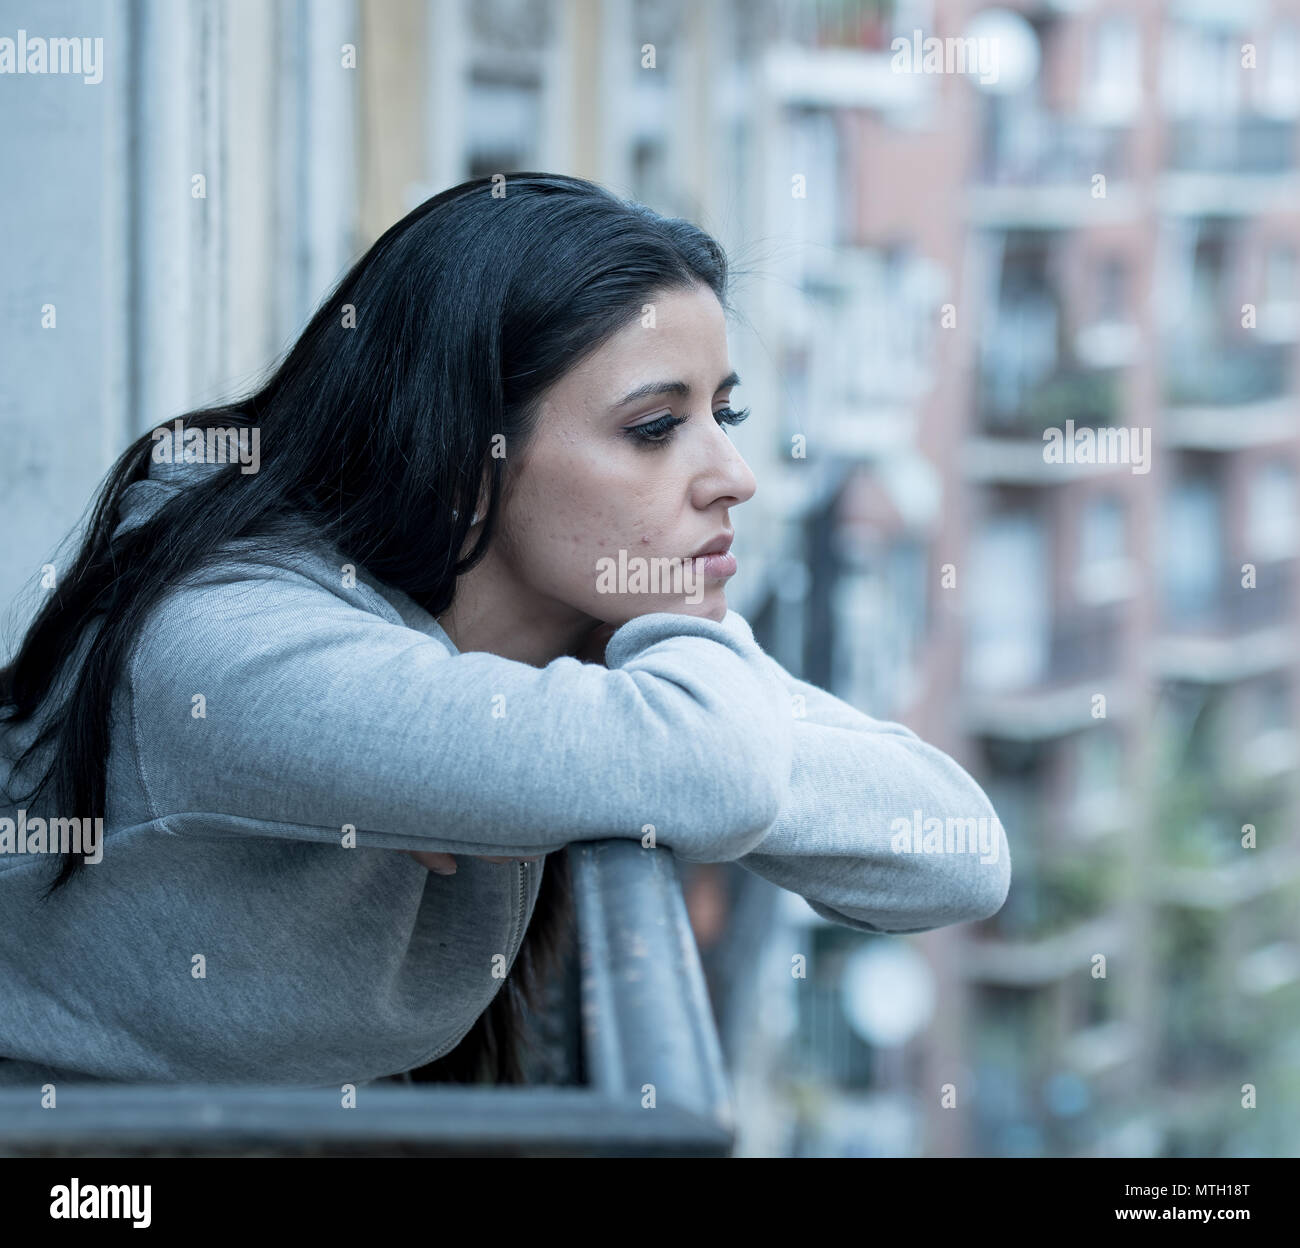 Schönen lateinischen gedrückt einsame Frau starrte traurig, Schmerz und auf einem Balkon zu Hause besorgt. Krise, Depression und psychische Gesundheit Konzept Stockfoto